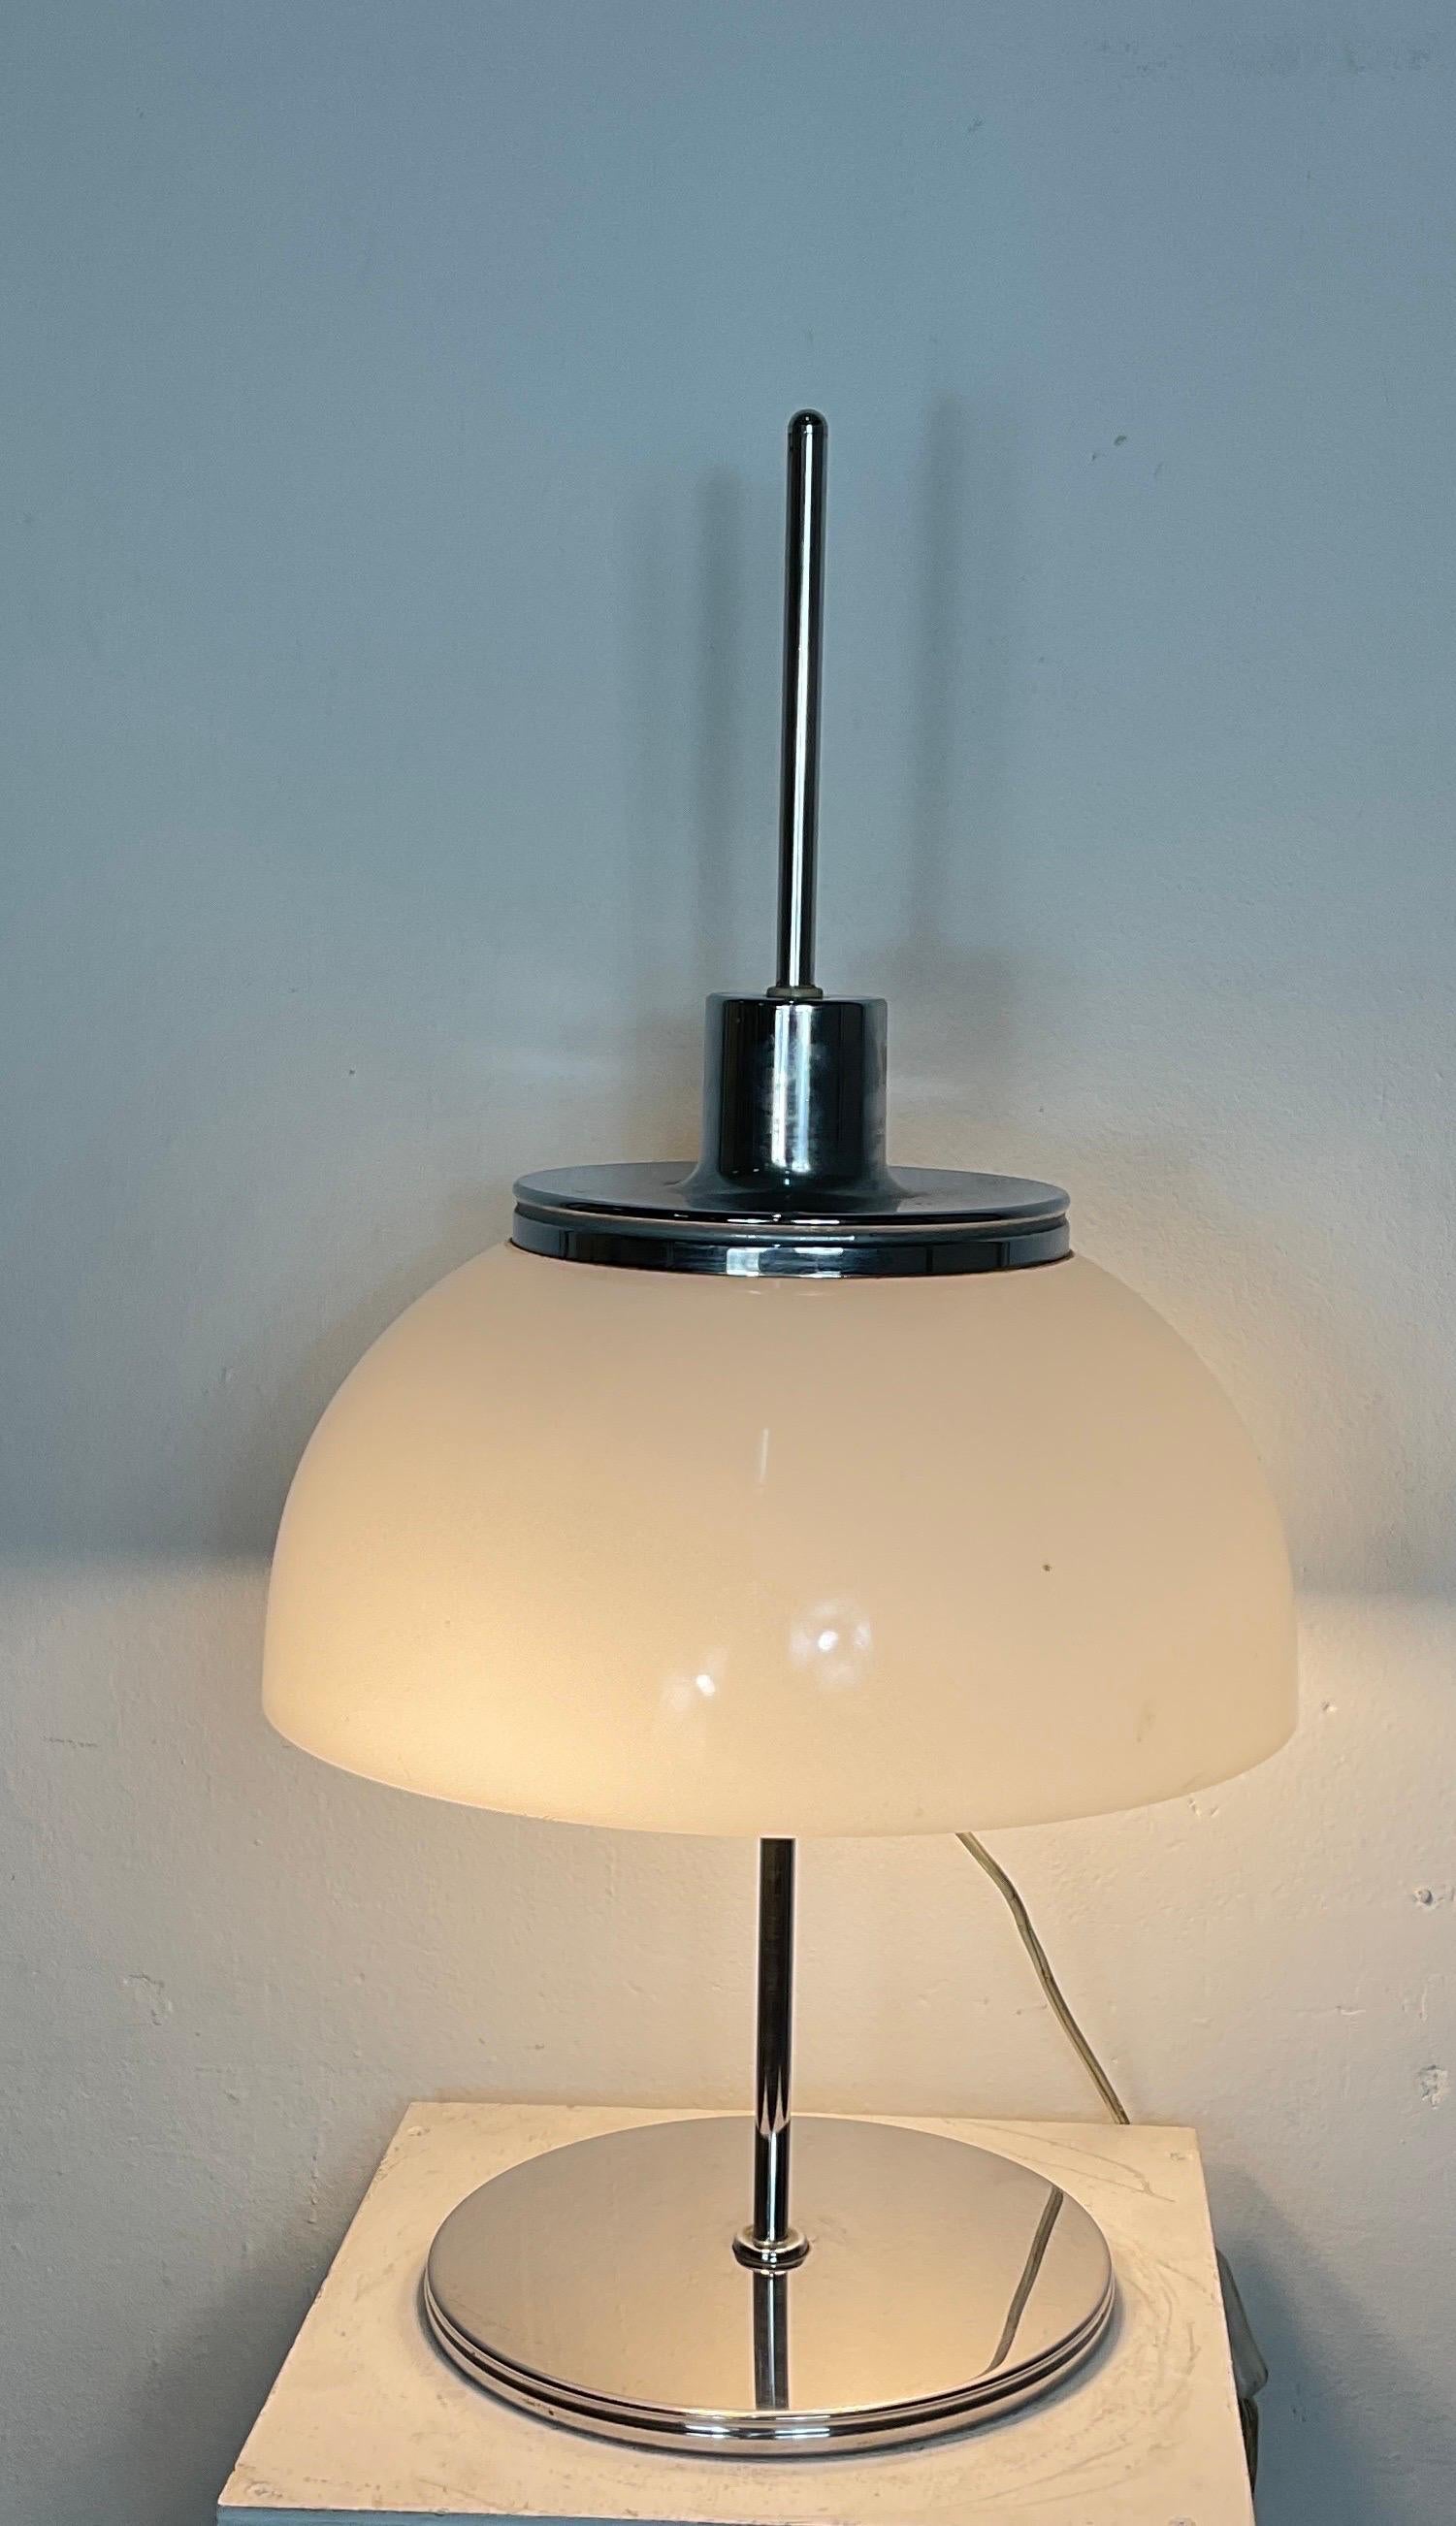 Rare lampe de table italienne conçue par le célèbre designer italien Harvey Guzzini.
Guzzini a conçu cette lampe dans les années 1970 pour le fabricant Meblo. 
 
La lampe a une base ronde en fer chromé. Tige chromée et champignon rond en acrylique